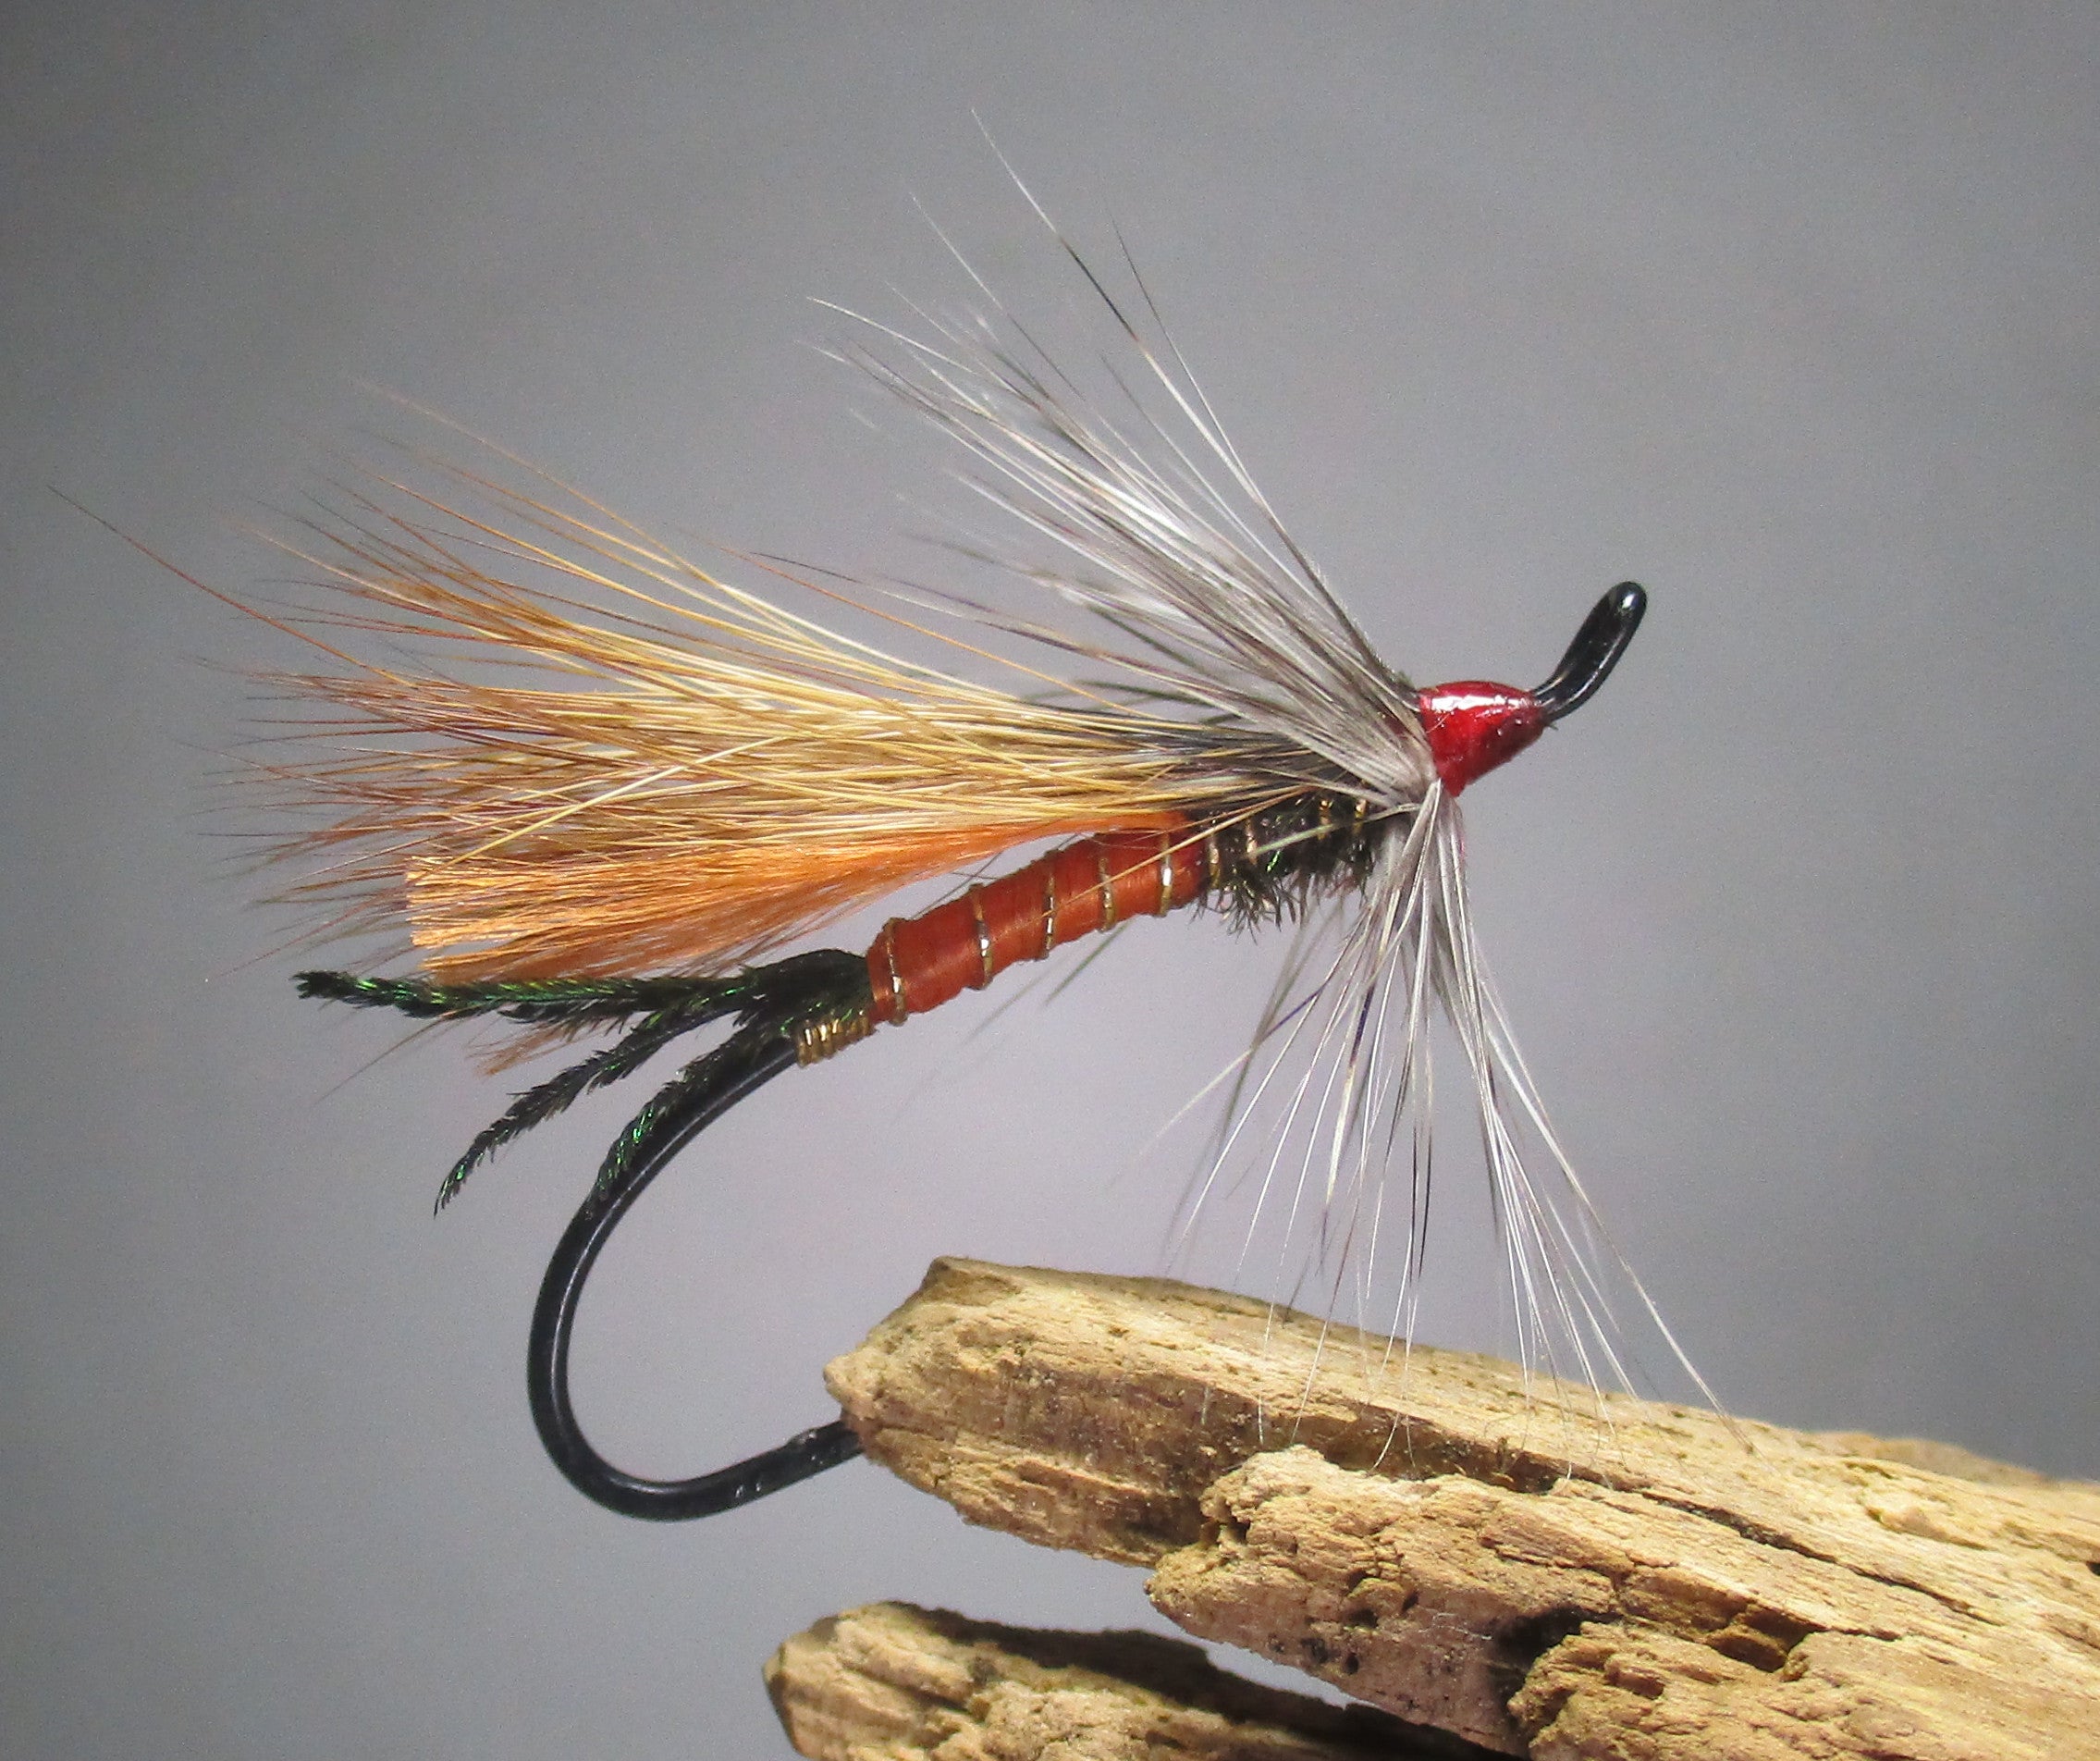 Steelhead Coachman Fly Fishing Flies - One Fly in Choice of Hook Size 